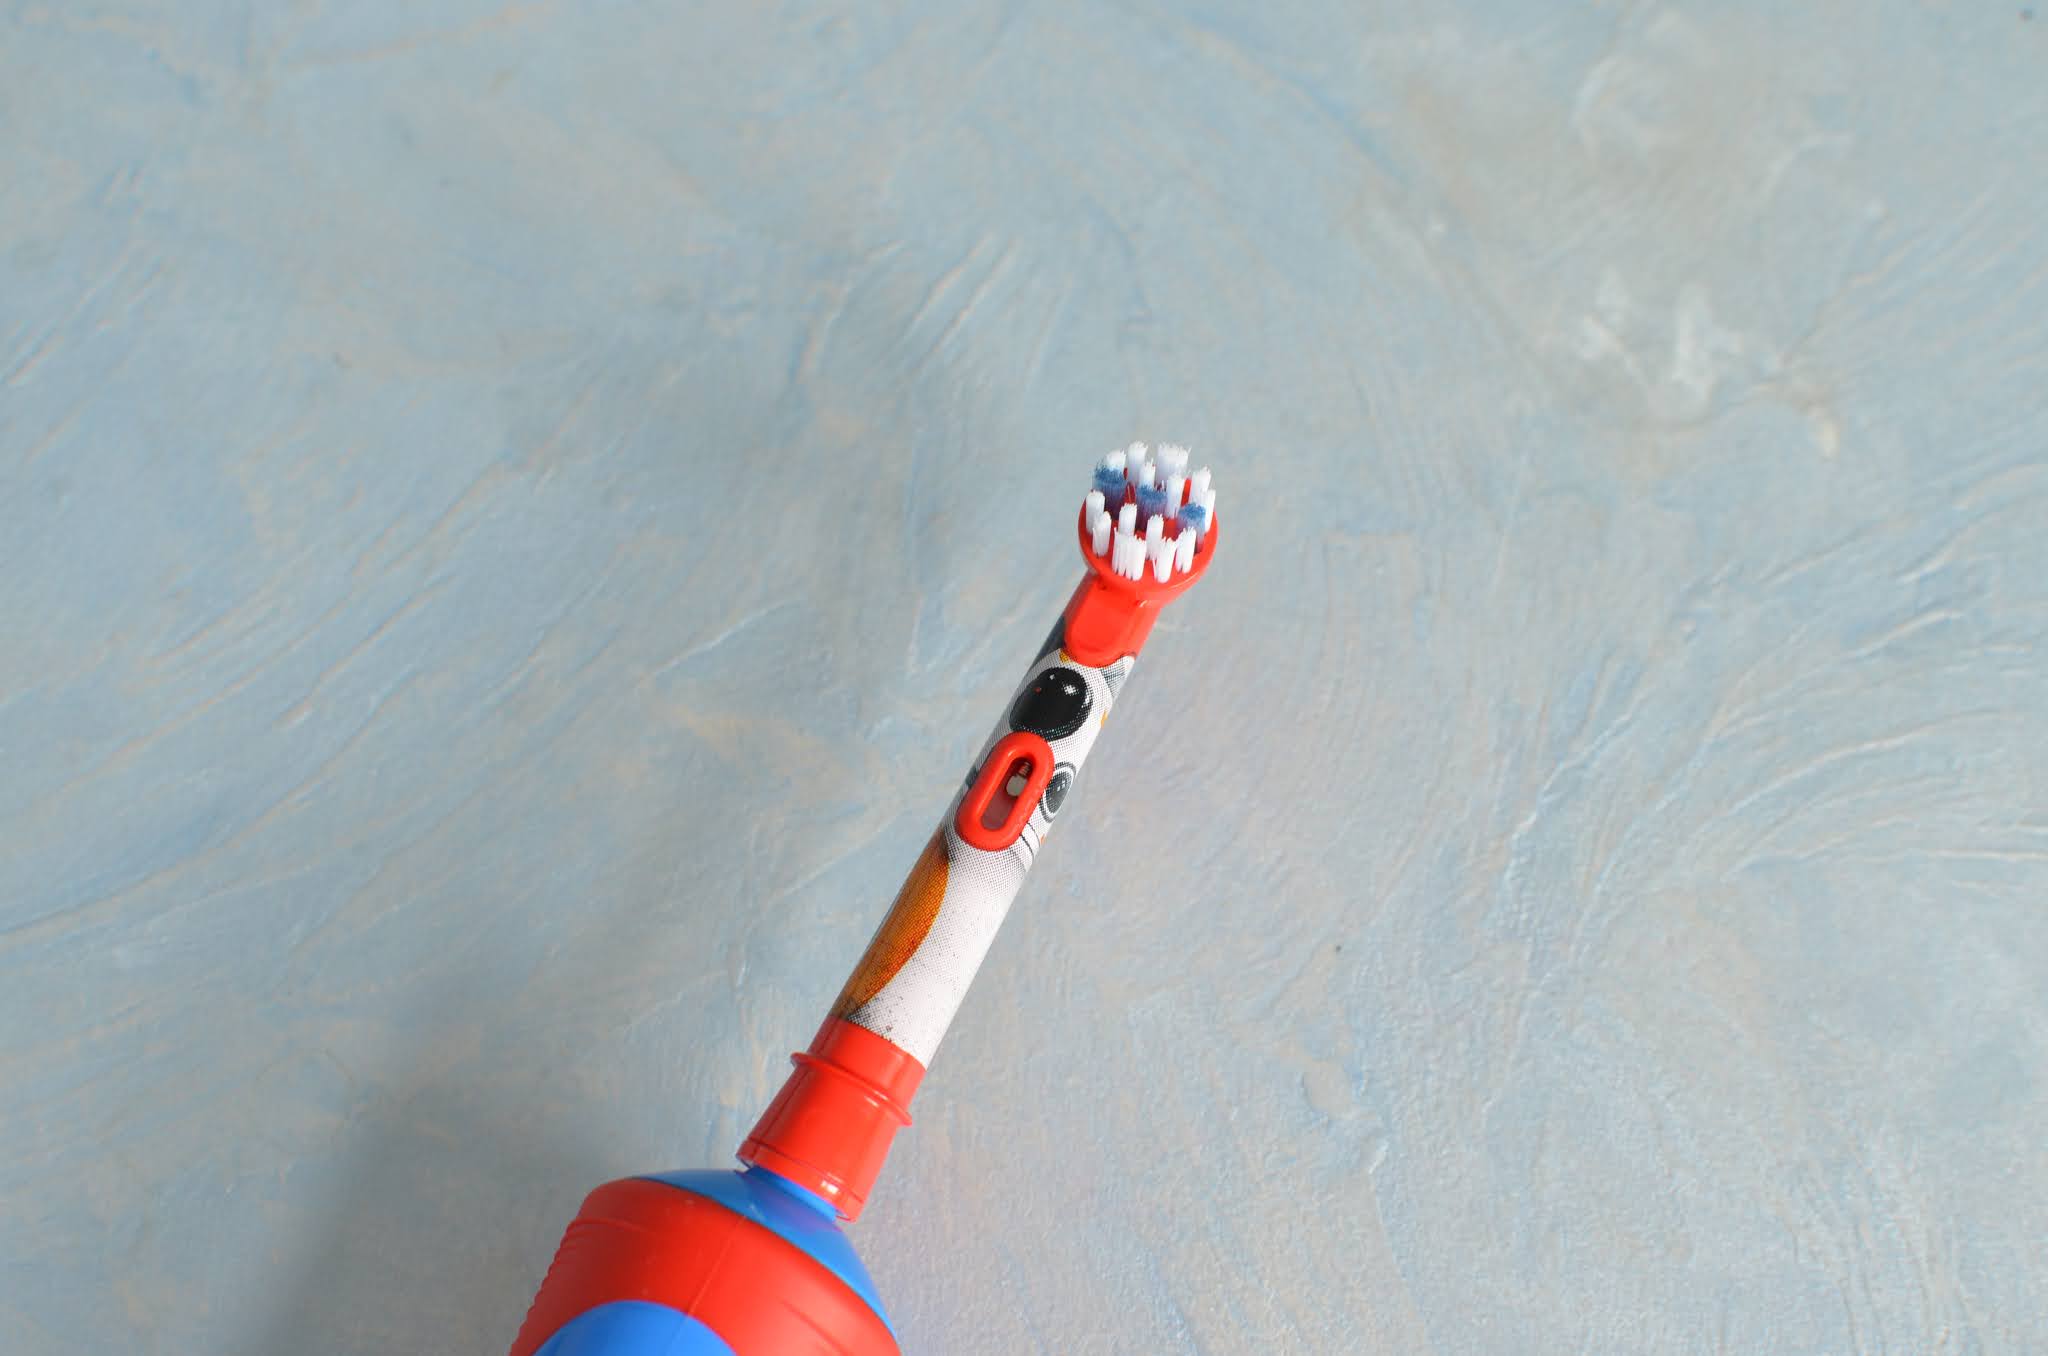 Електрична зубна щітка для дітей Oral-B "Star Wars" Kids Stages